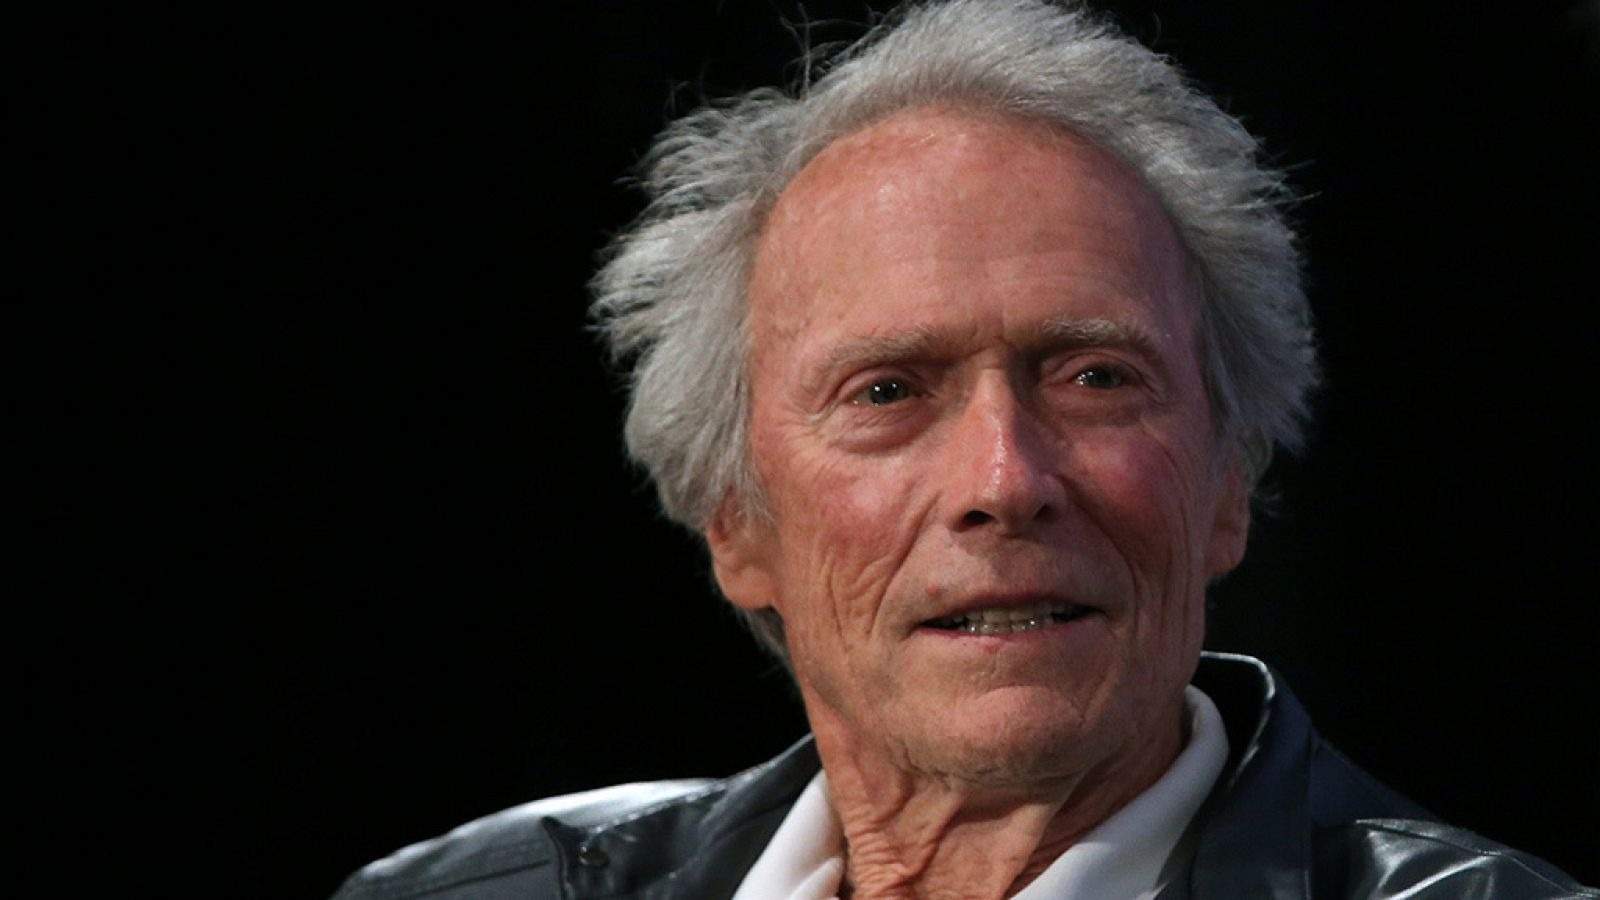 Clint Eastwood és conscient que les seves pel·lícules són ara racistes